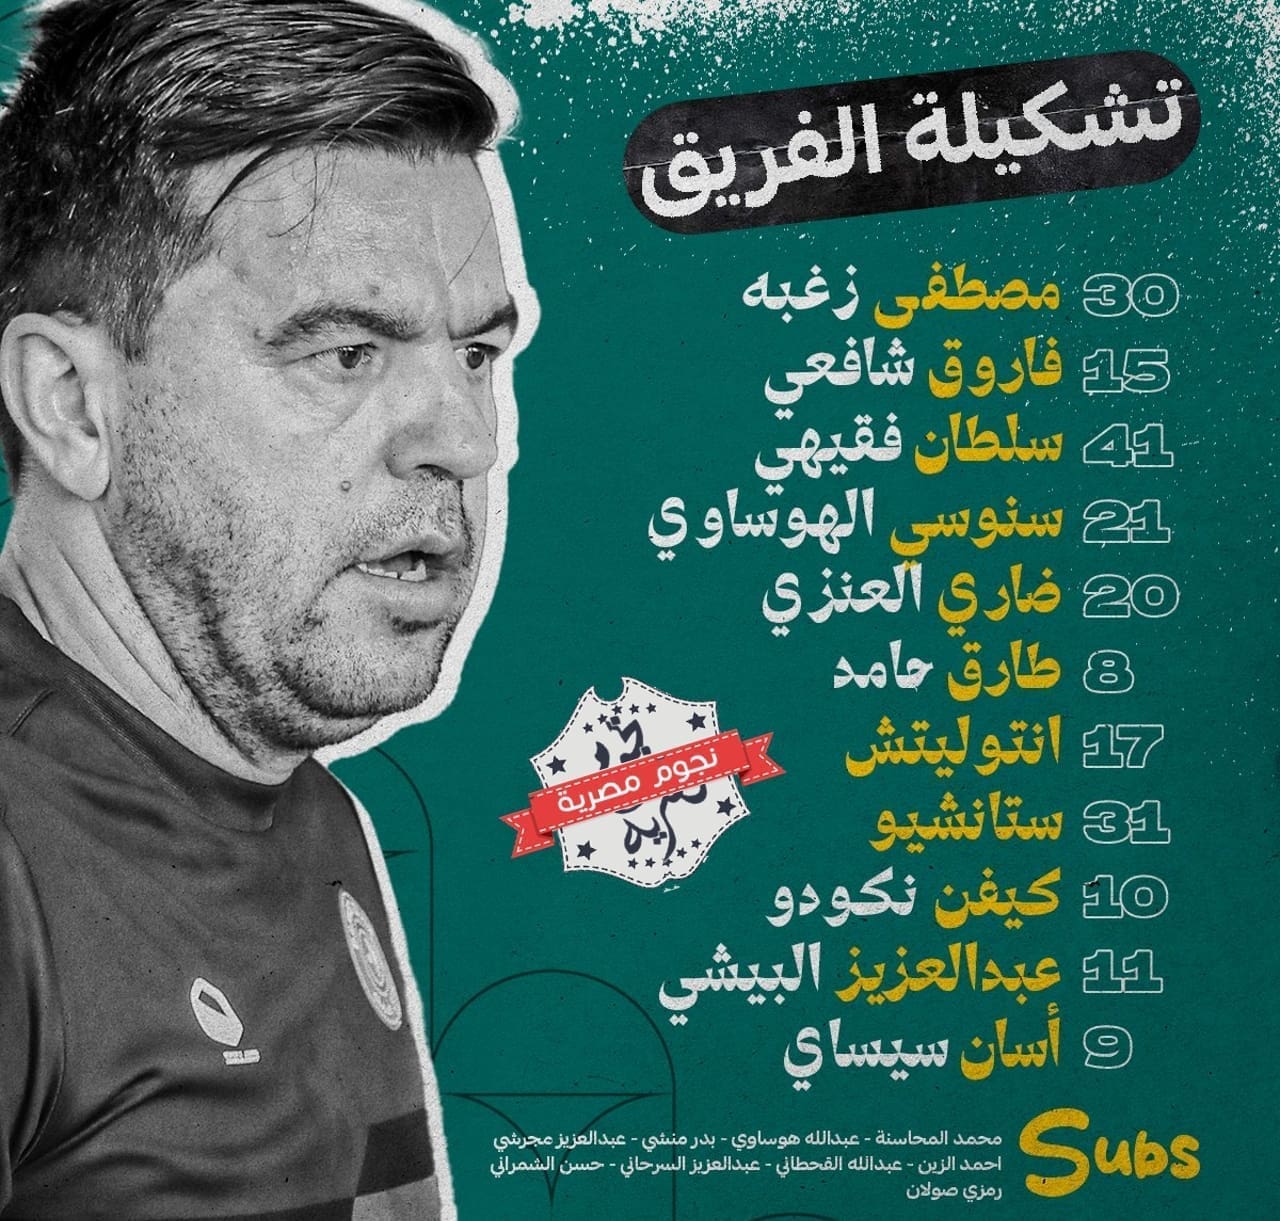 قائمة ضمك في مواجهة الهلال في الدوري السعودي (مصدر الصورة. حساب فارس الجنوب على تويتر)